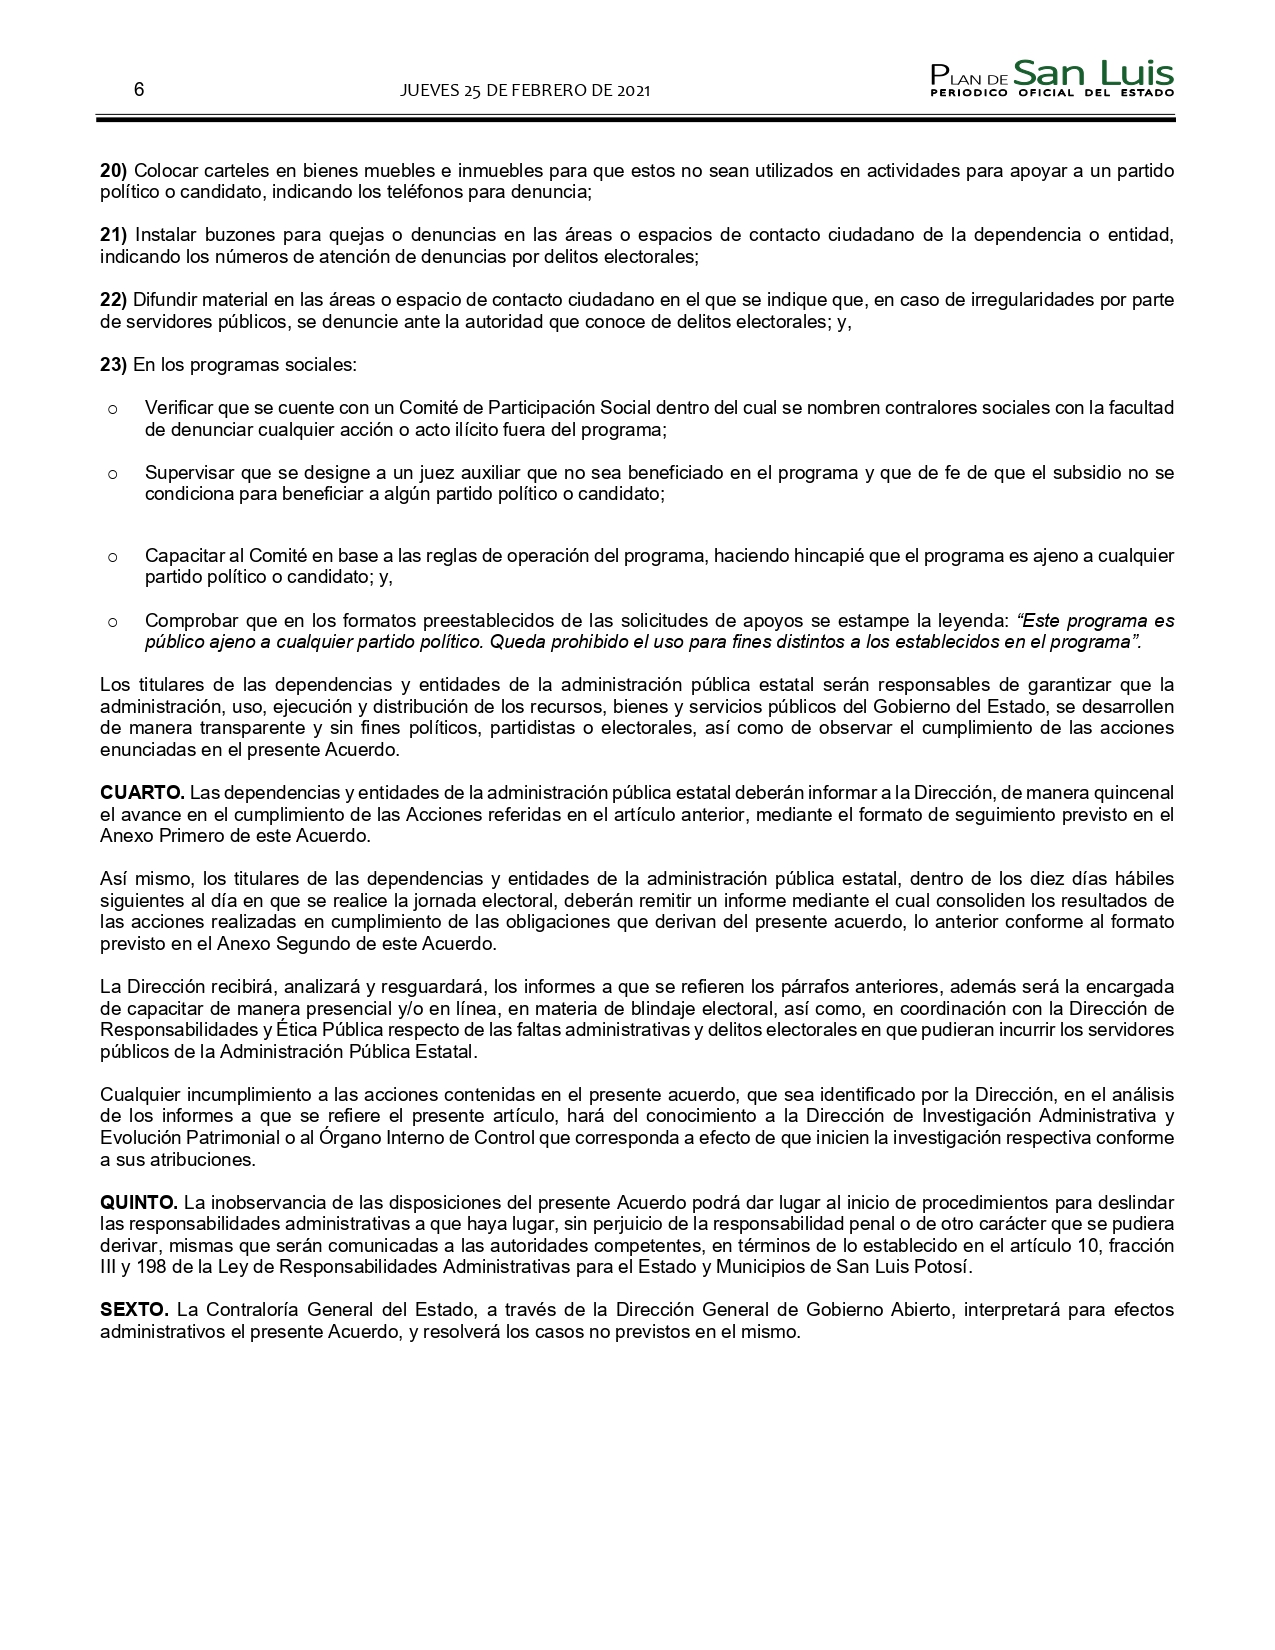 SLP ACUERDO PARA LA PREVENCION DE FALTAS DE LOS SERVIDORES PUBLICOS (25-FEB-2021) (1)_pages-to-jpg-0006.jpg